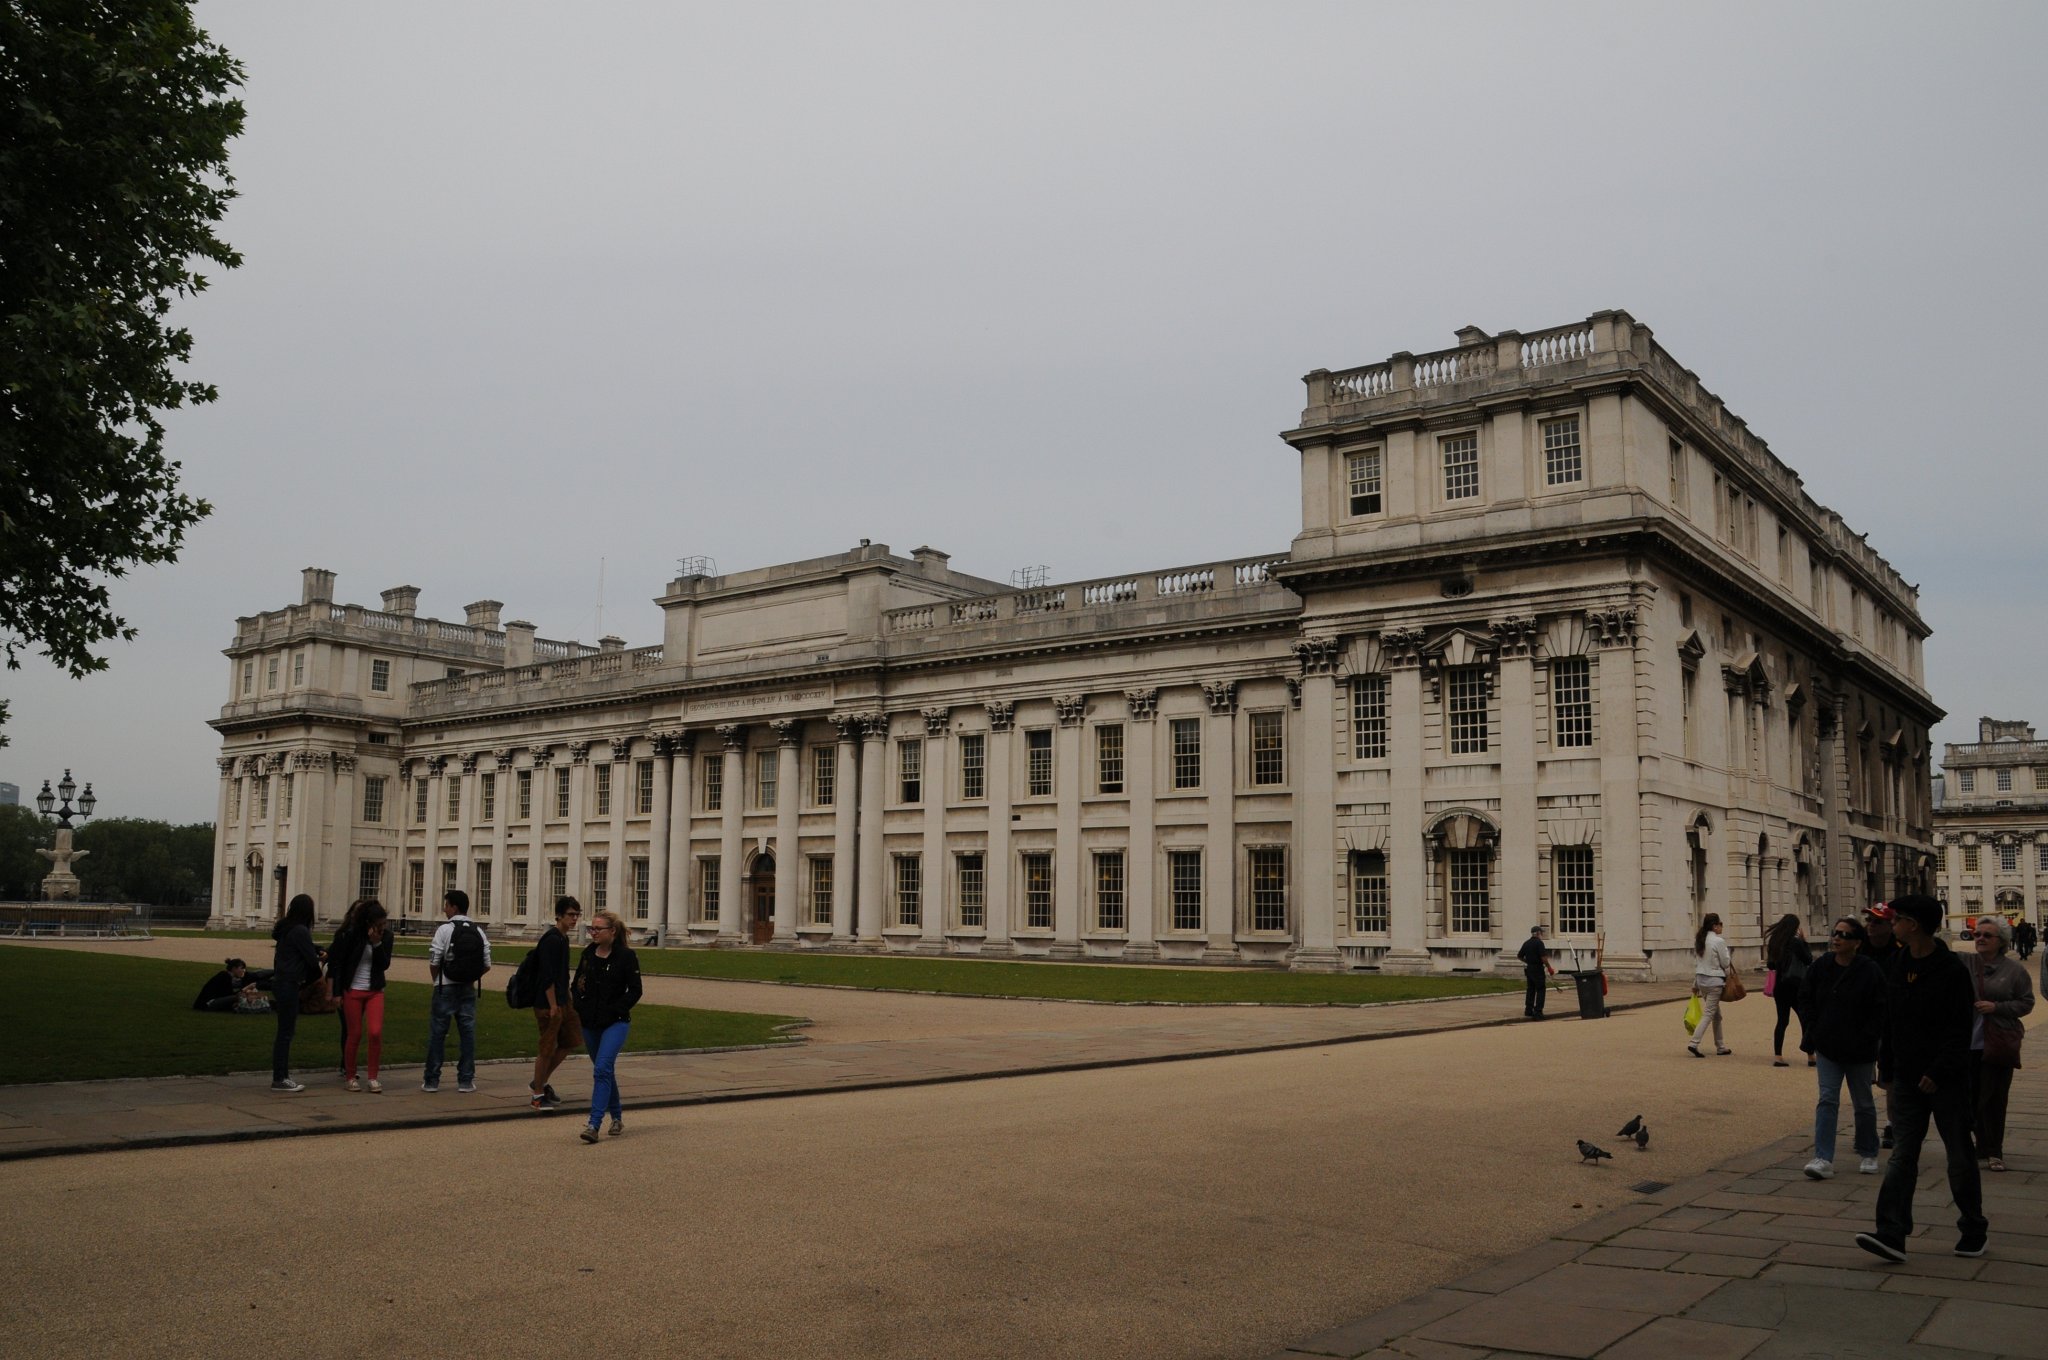 DSC_4262.JPG - Old Royal Naval College v Greenwich se může pochlubit úchvatnou barokní anglickou architekturou.